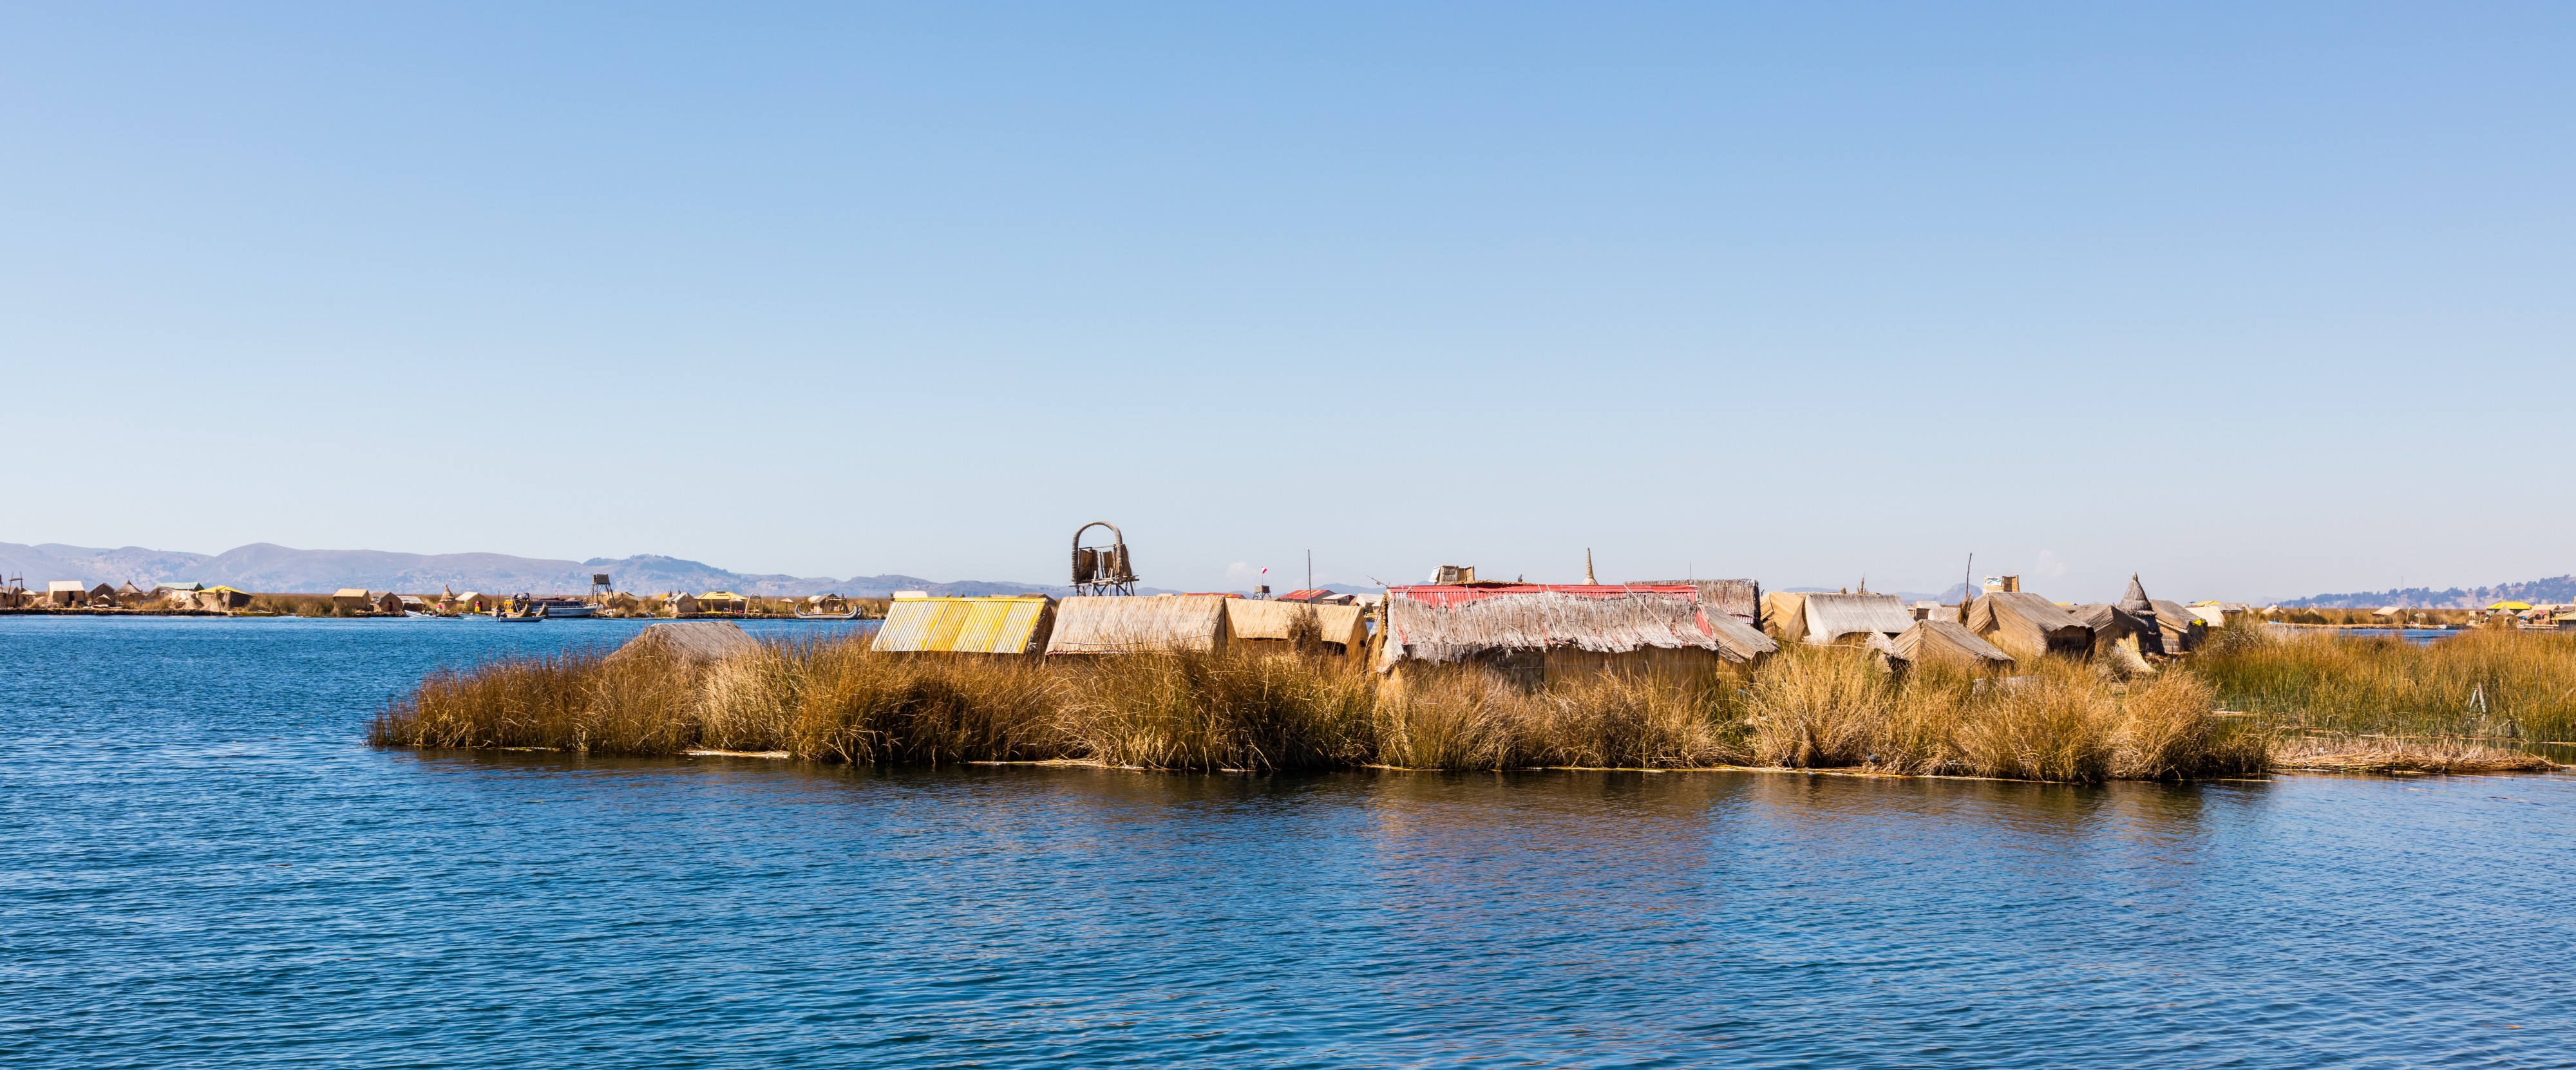 Islas flotantes de los Uros, Lago Titicaca, Perú, 2015-08-01, DD 17